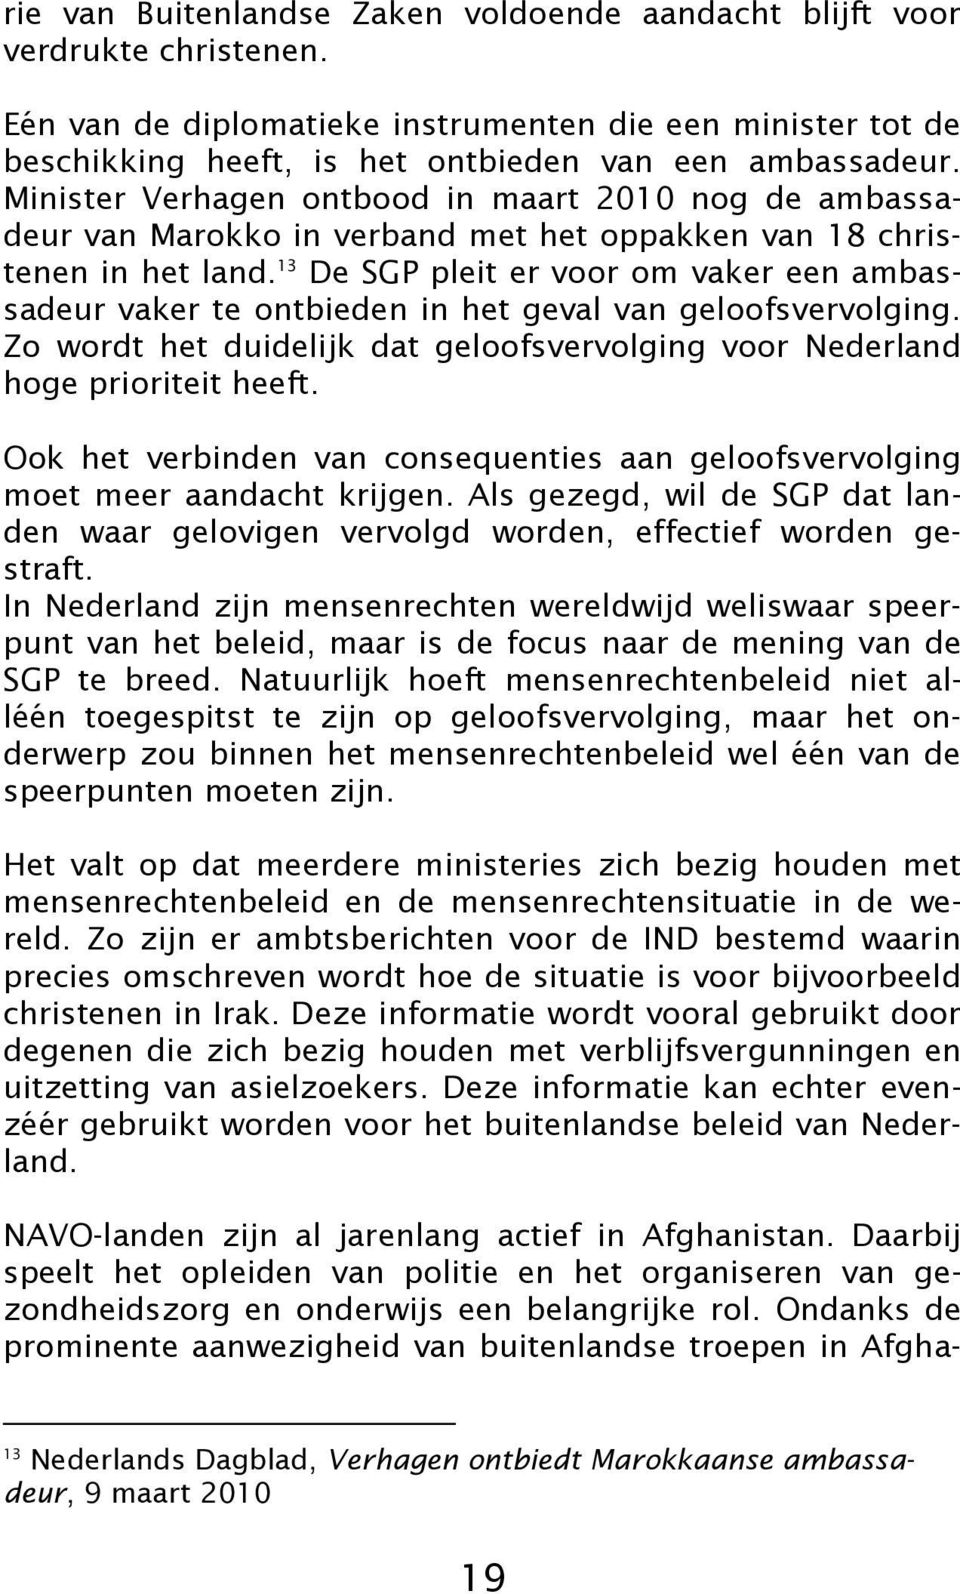 13 De SGP pleit er voor om vaker een ambassadeur vaker te ontbieden in het geval van geloofsvervolging. Zo wordt het duidelijk dat geloofsvervolging voor Nederland hoge prioriteit heeft.